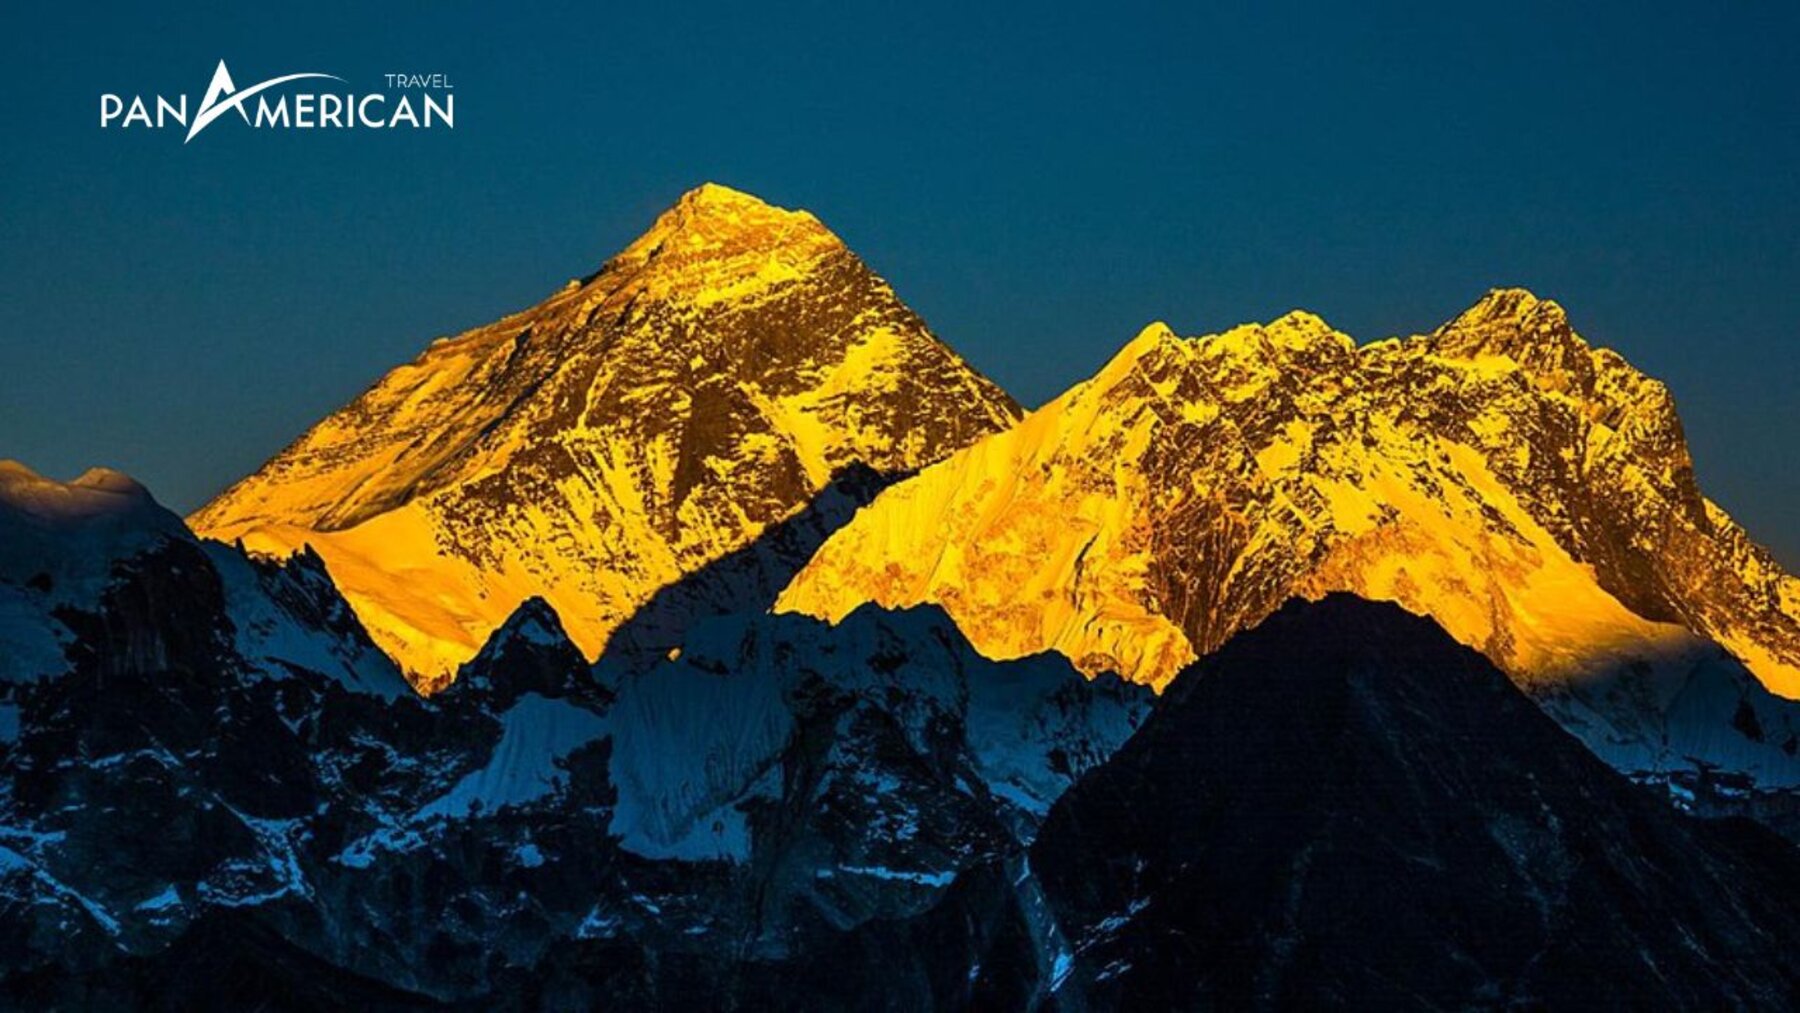 Đỉnh núi Everest ở đâu? Chiêm ngưỡng vẻ đẹp toàn cảnh từ nóc nhà của thế giới - Gallery Image